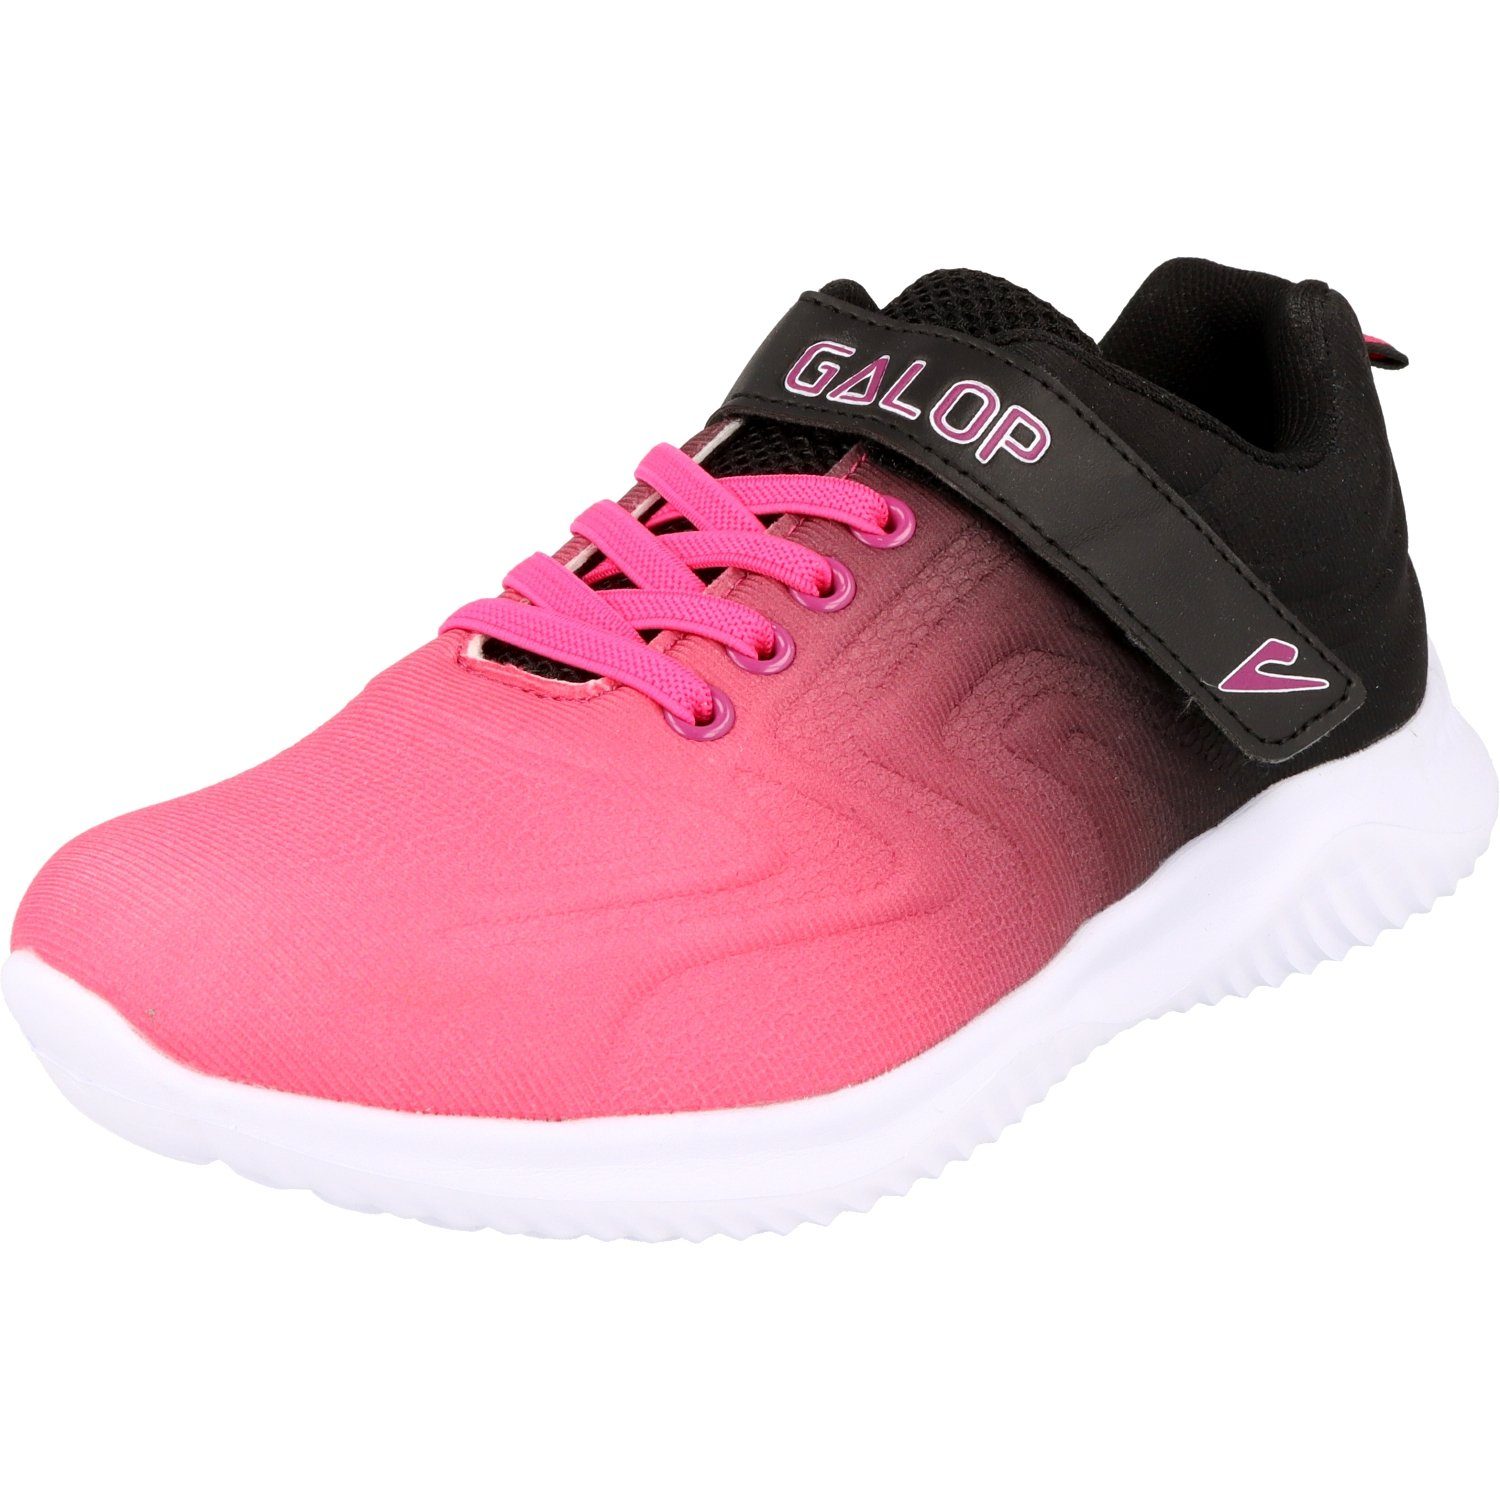 Galop »Kinder L21806-332 sportliche Mädchen Schuhe Sneaker Klett  Fuchsia/Schwarz« Sneaker online kaufen | OTTO